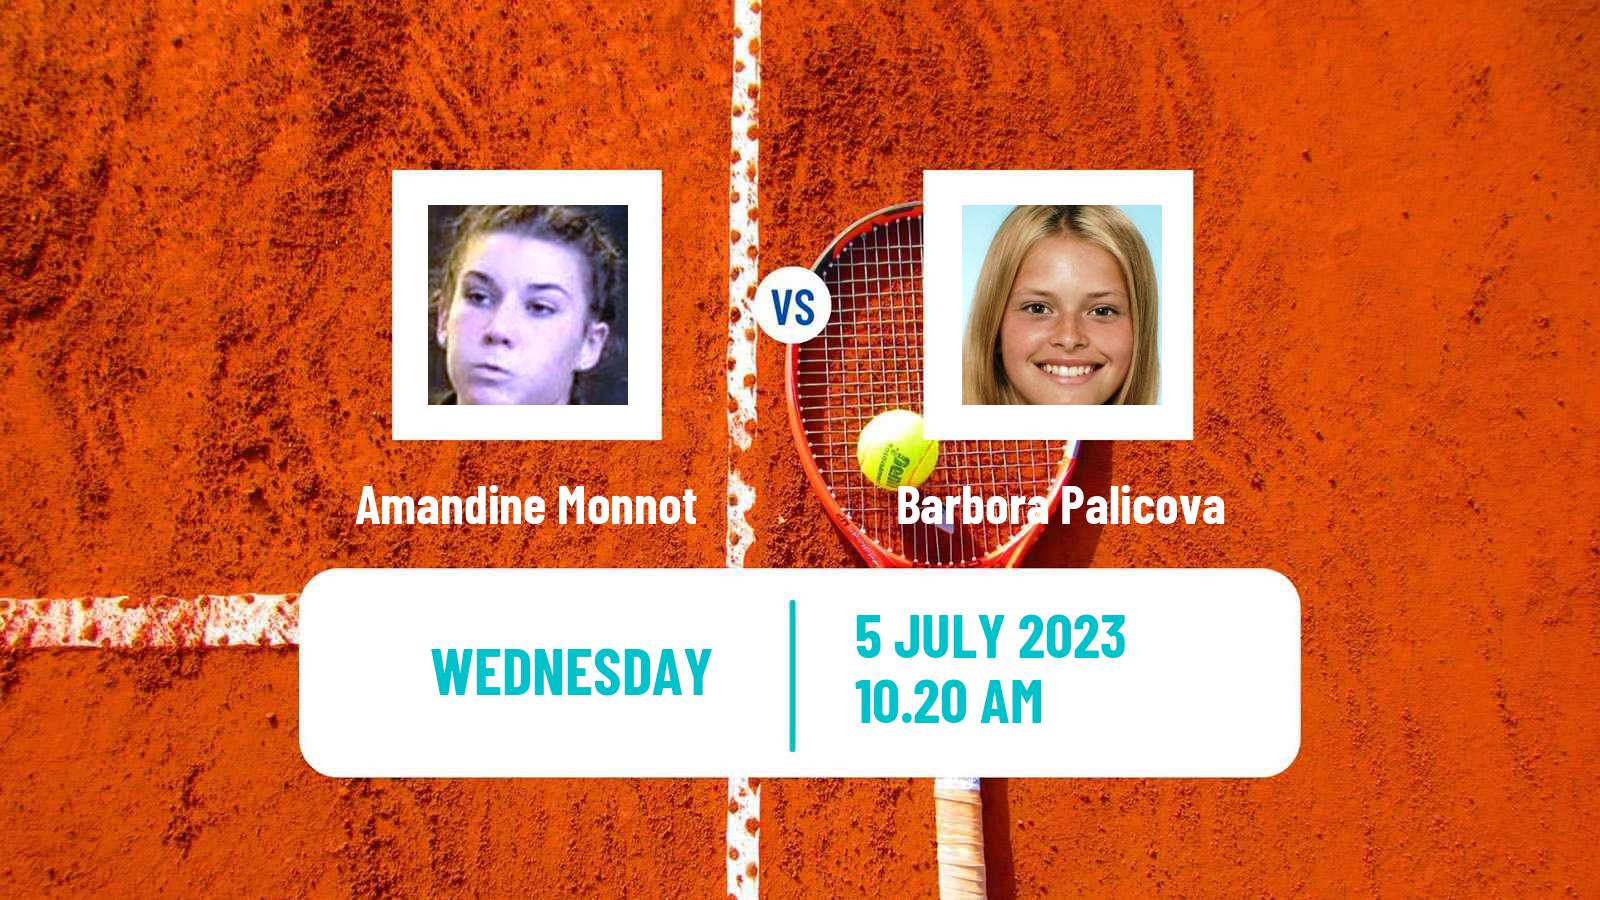 Tennis ITF W60 Montpellier Women Amandine Monnot - Barbora Palicova